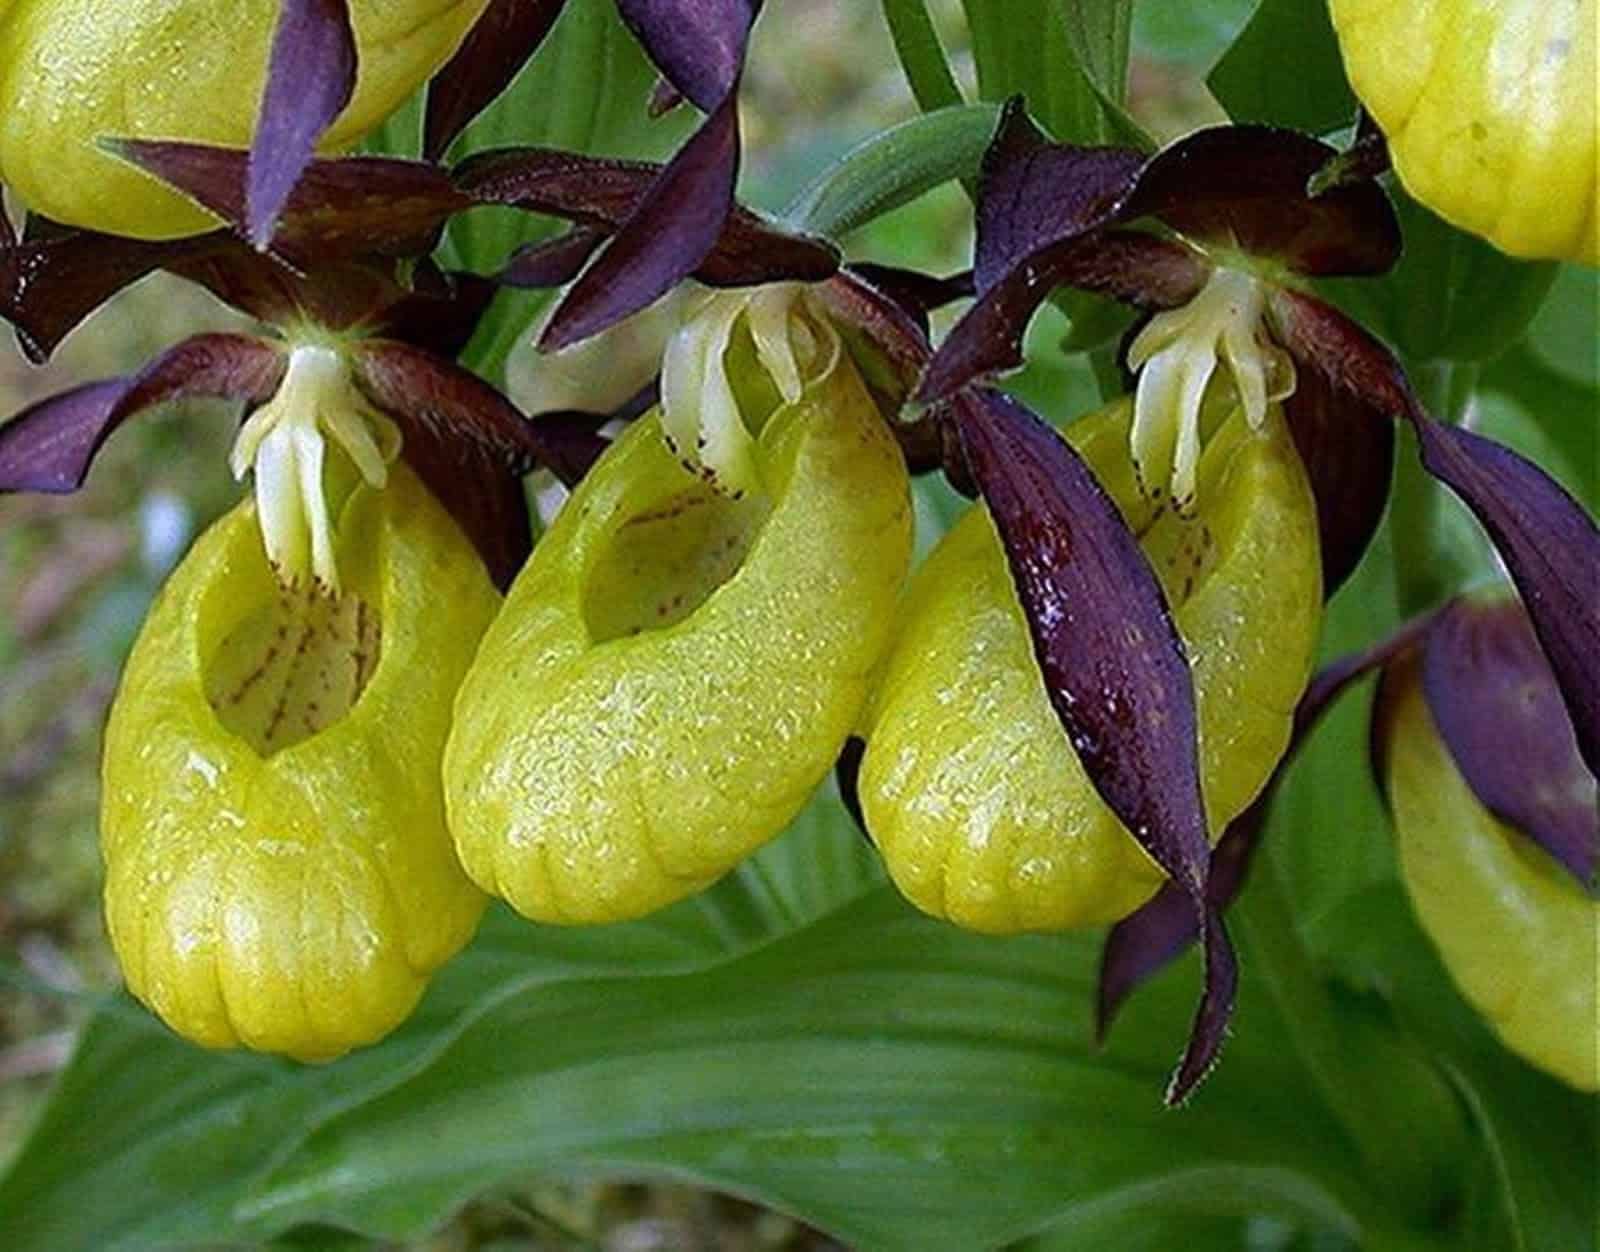 A orquídea sapatinho gosta de adubo para se desenvolver.